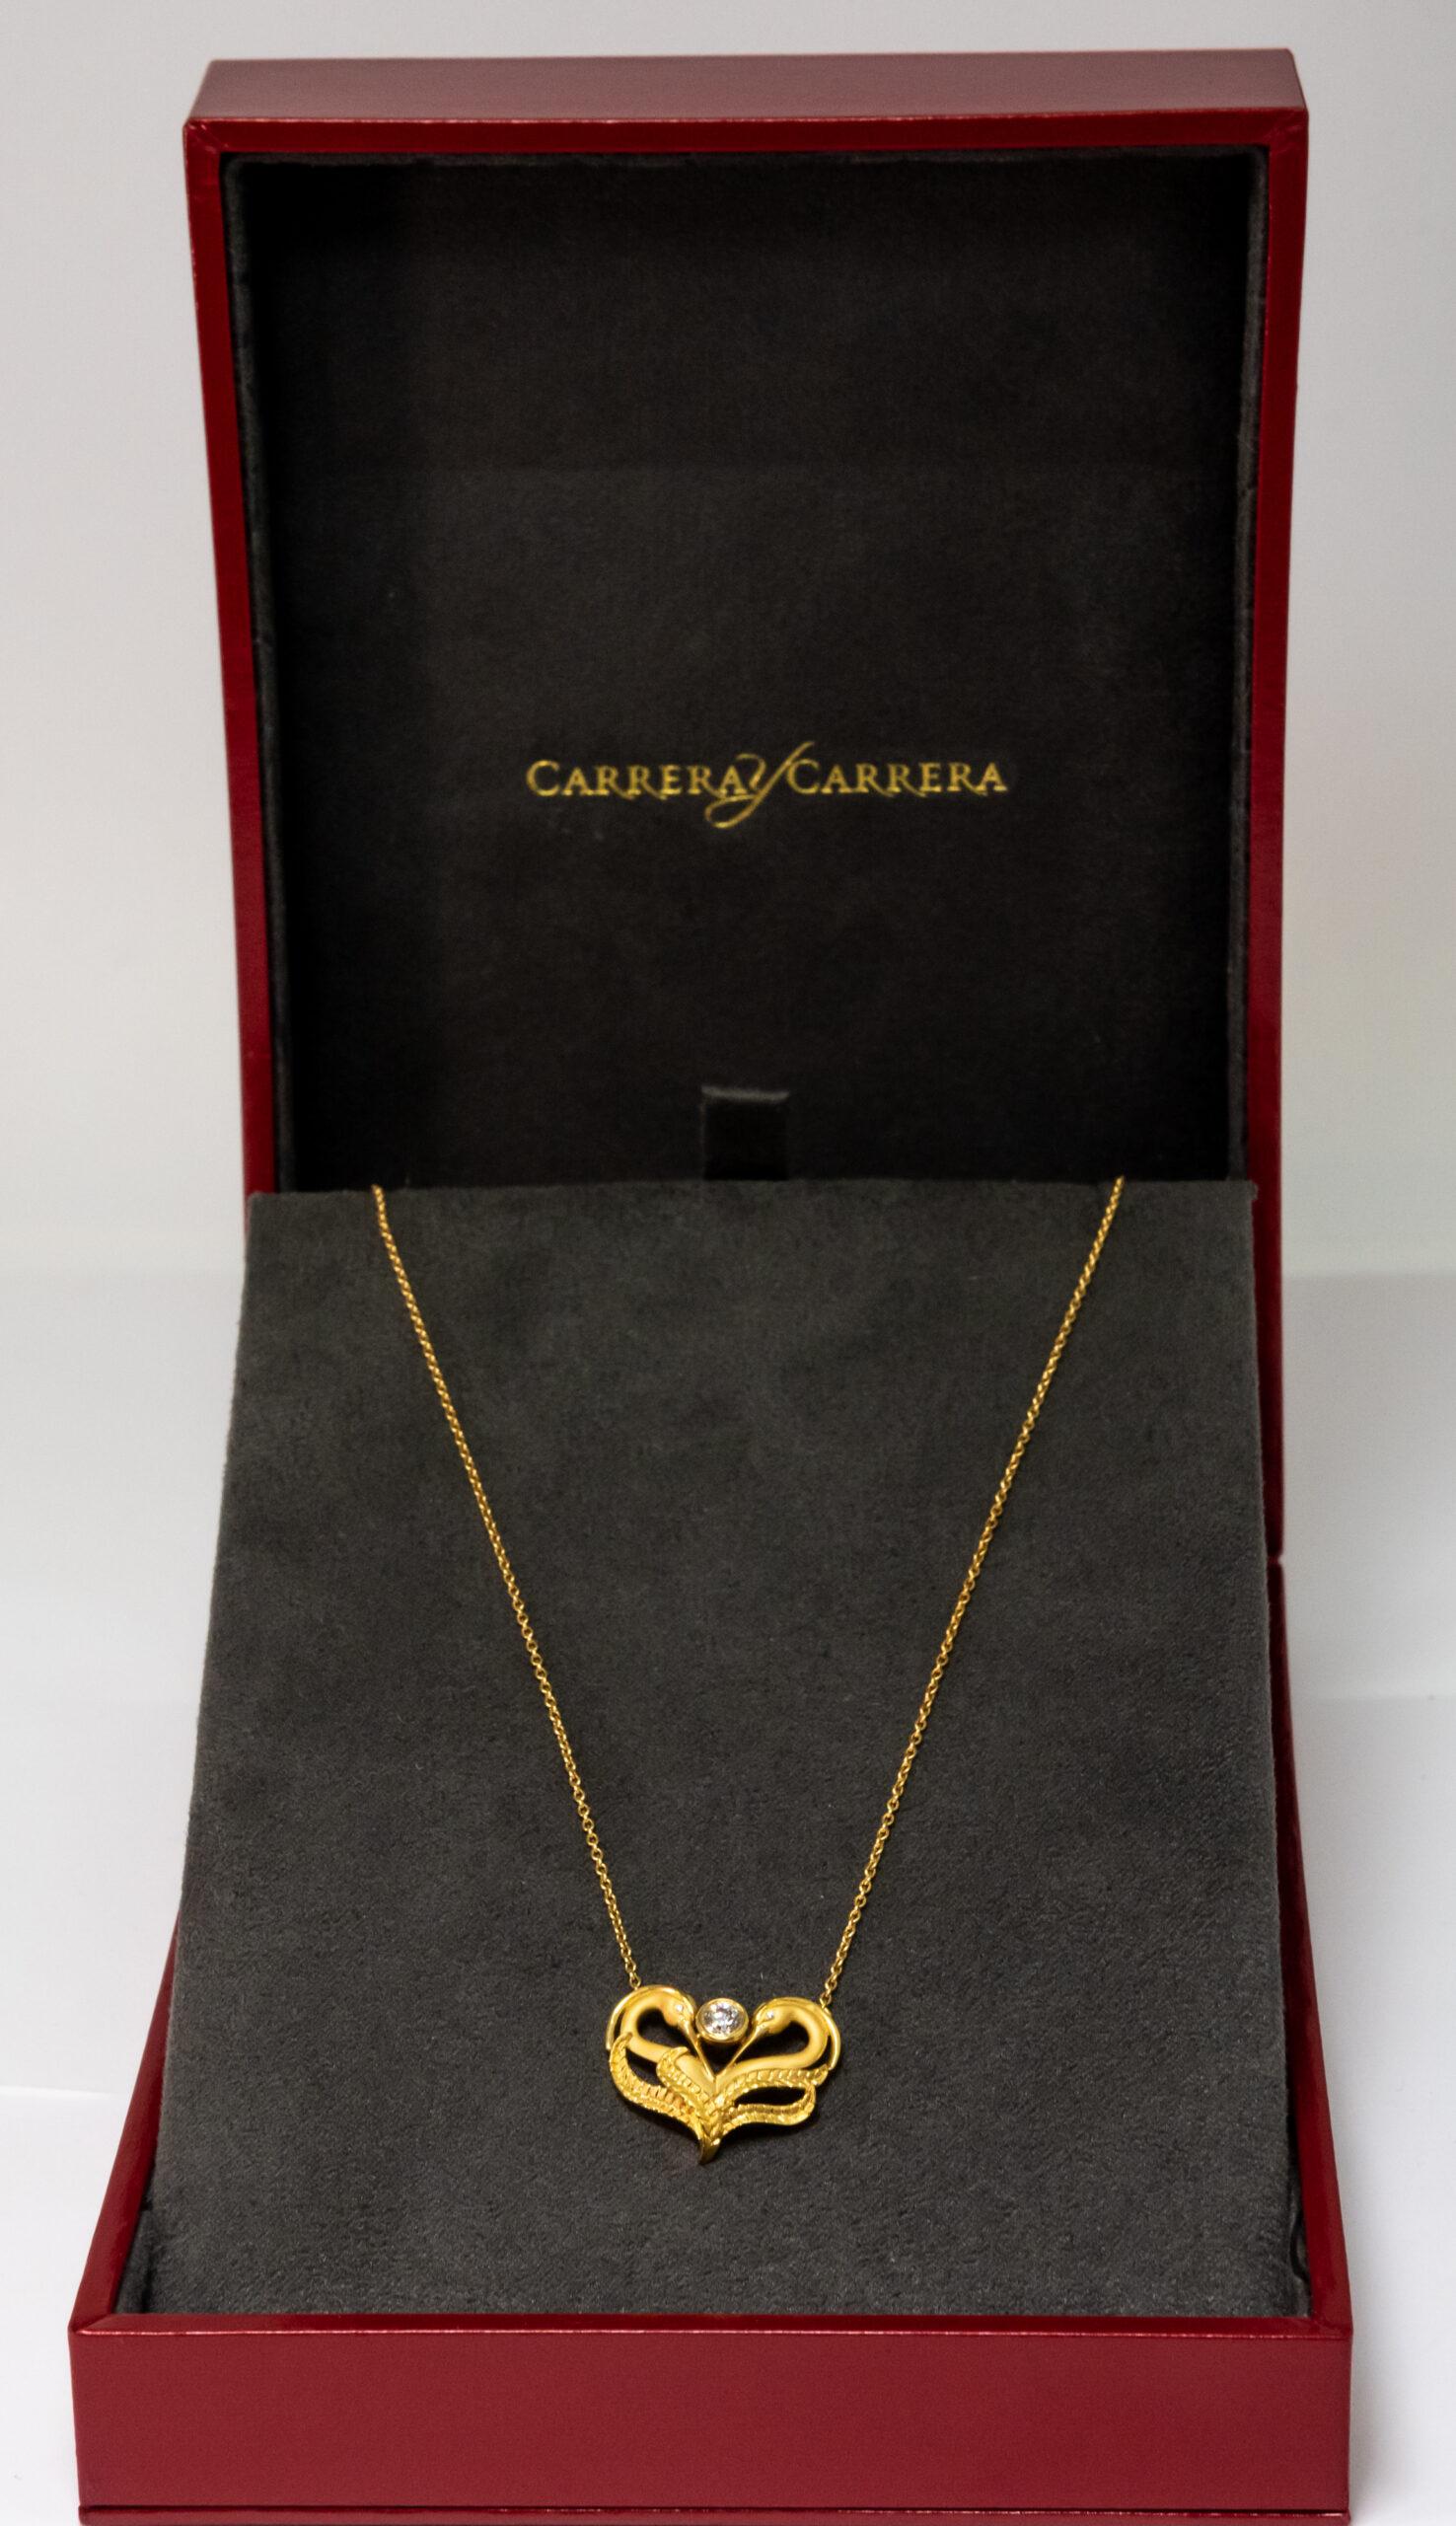 Carrera y Carrera Garzas 18k Yellow Gold & Diamonds Pendant, 10069463 In New Condition For Sale In North Miami Beach, FL